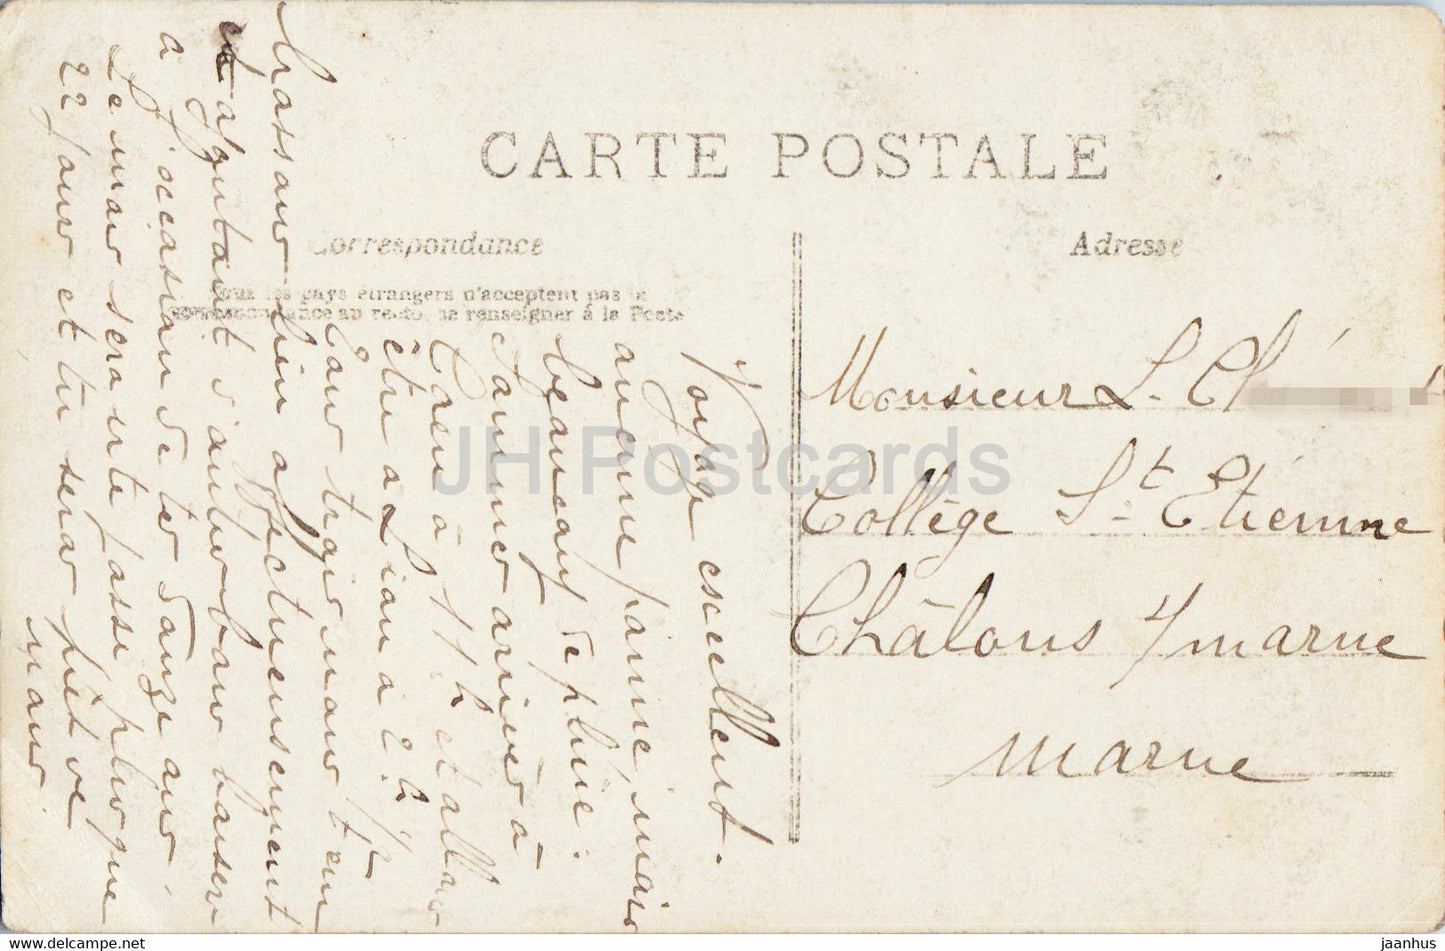 Geburtstagsgrußkarte – Bon Anniversaire – Junge – 626 – AN Paris – alte Postkarte – Frankreich – gebraucht